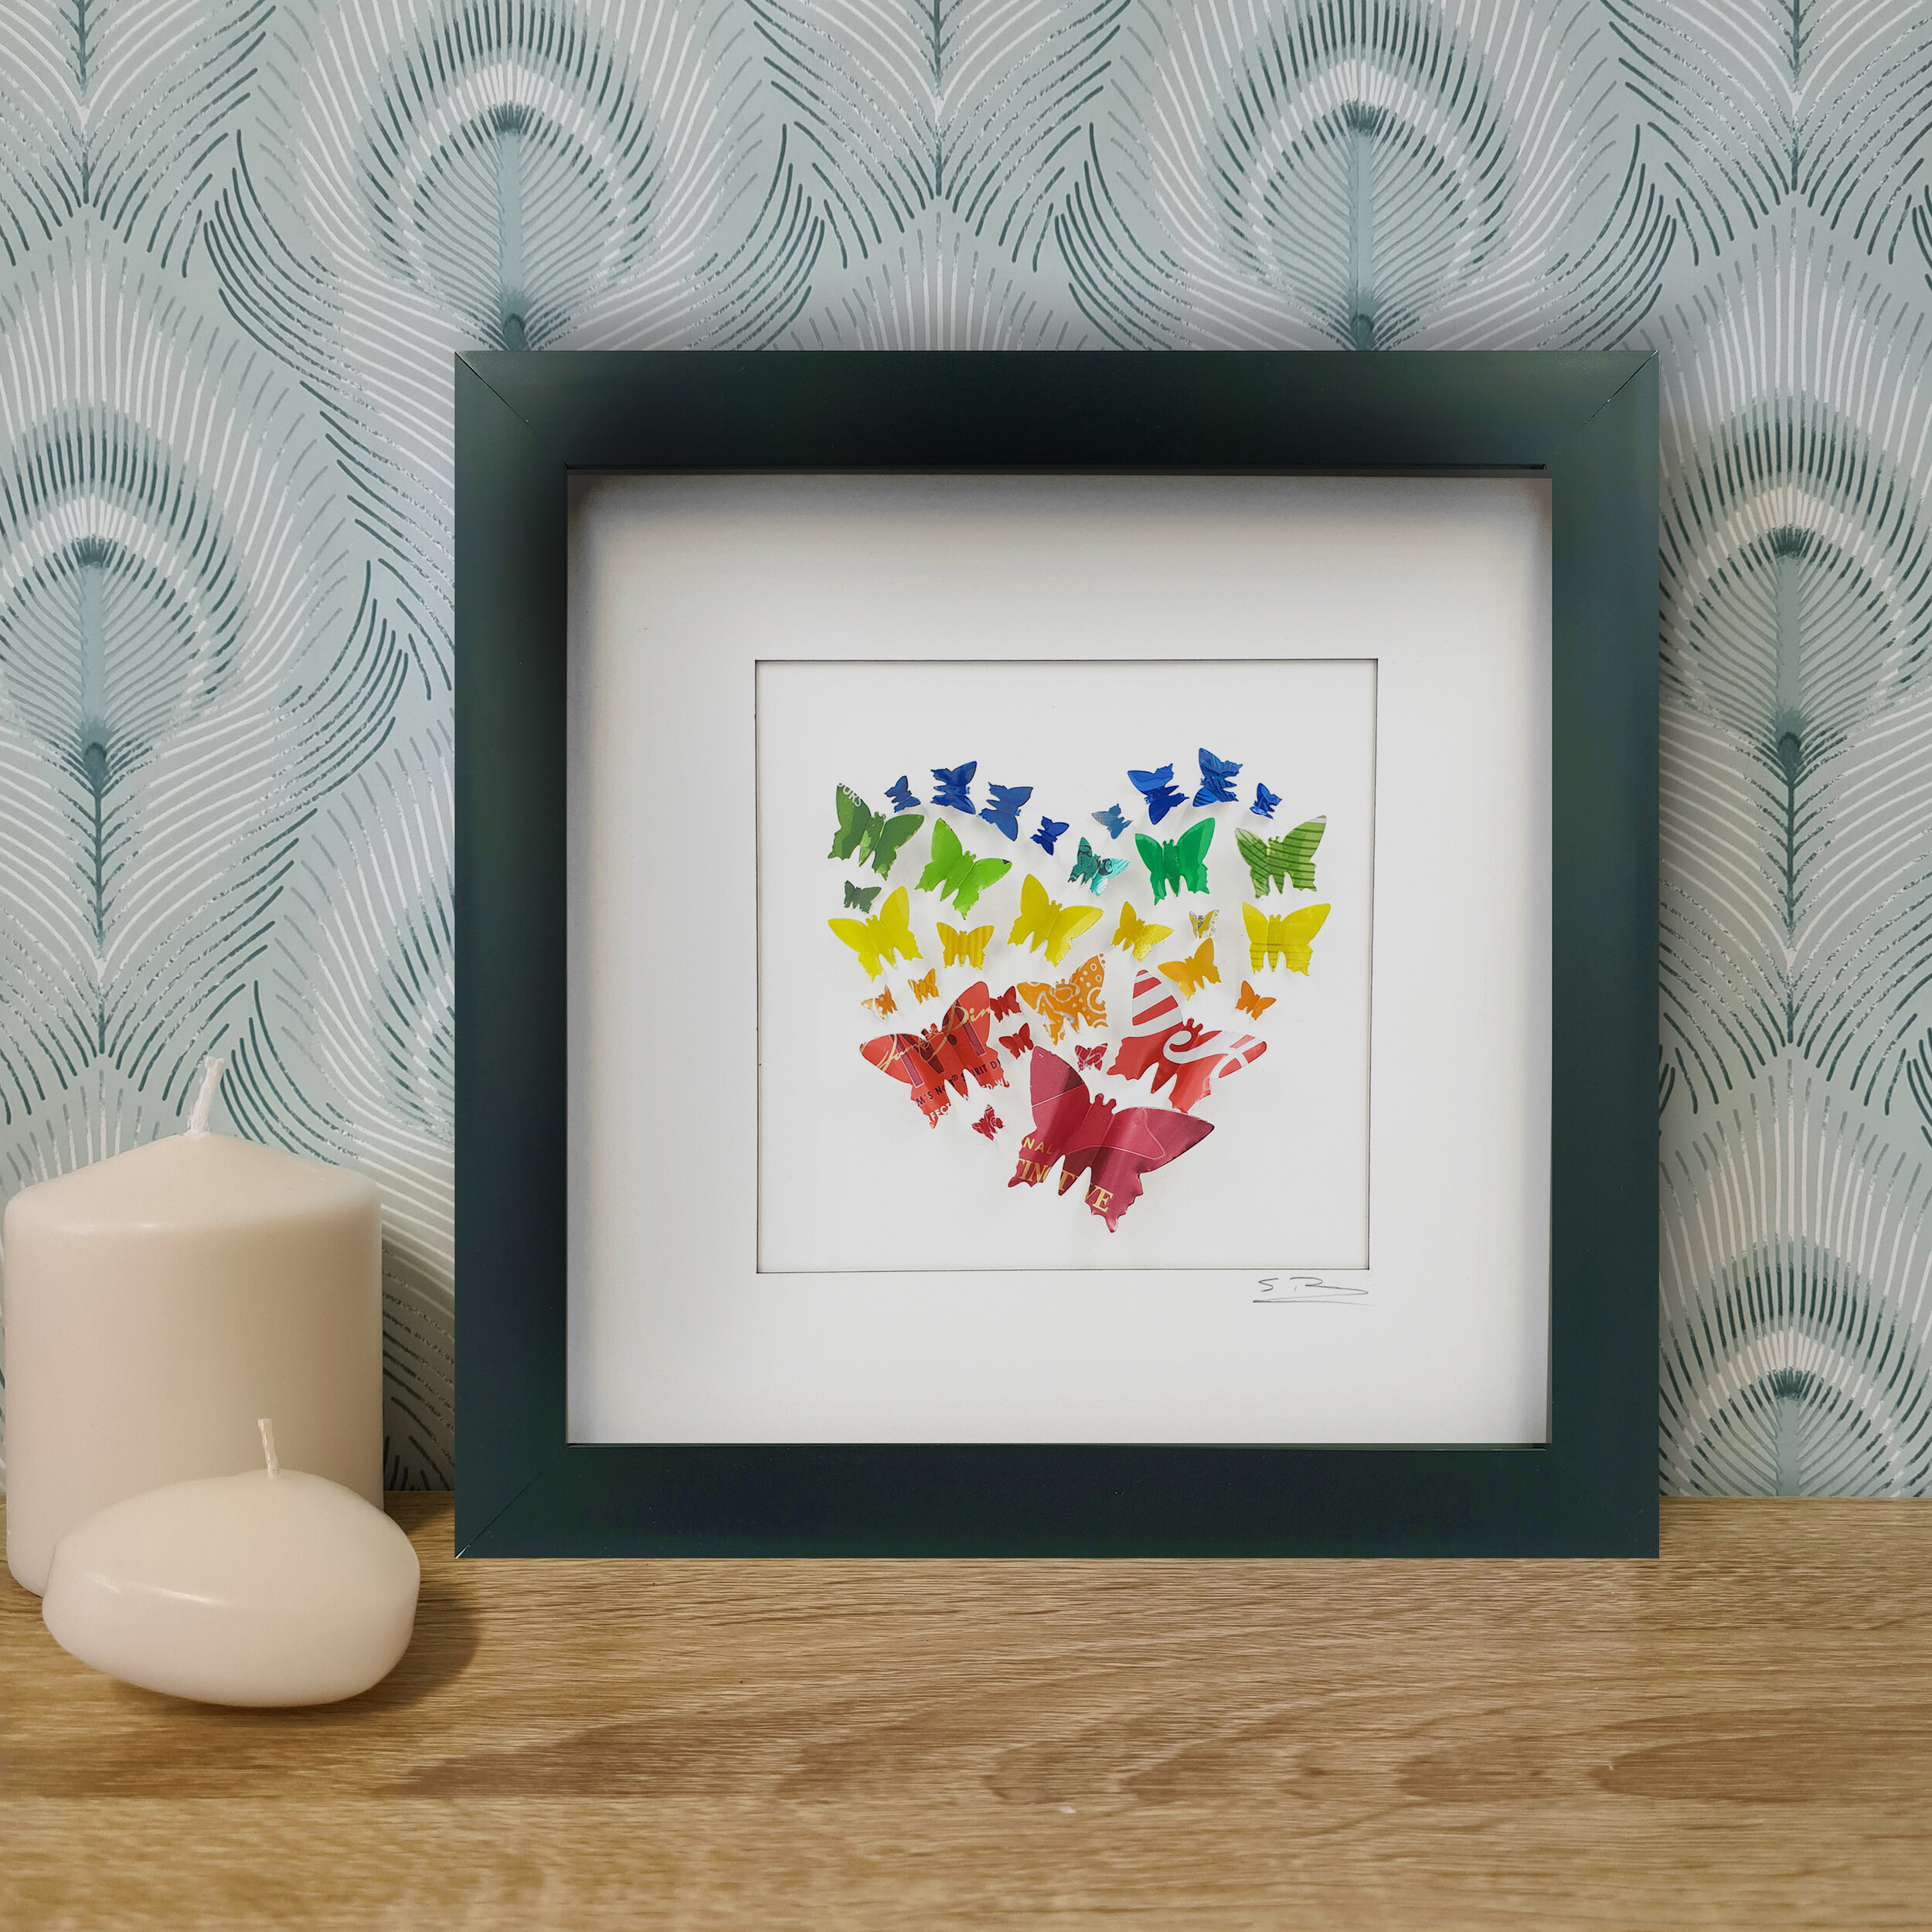 Rainbow Butterfly Heart tin can framed art 